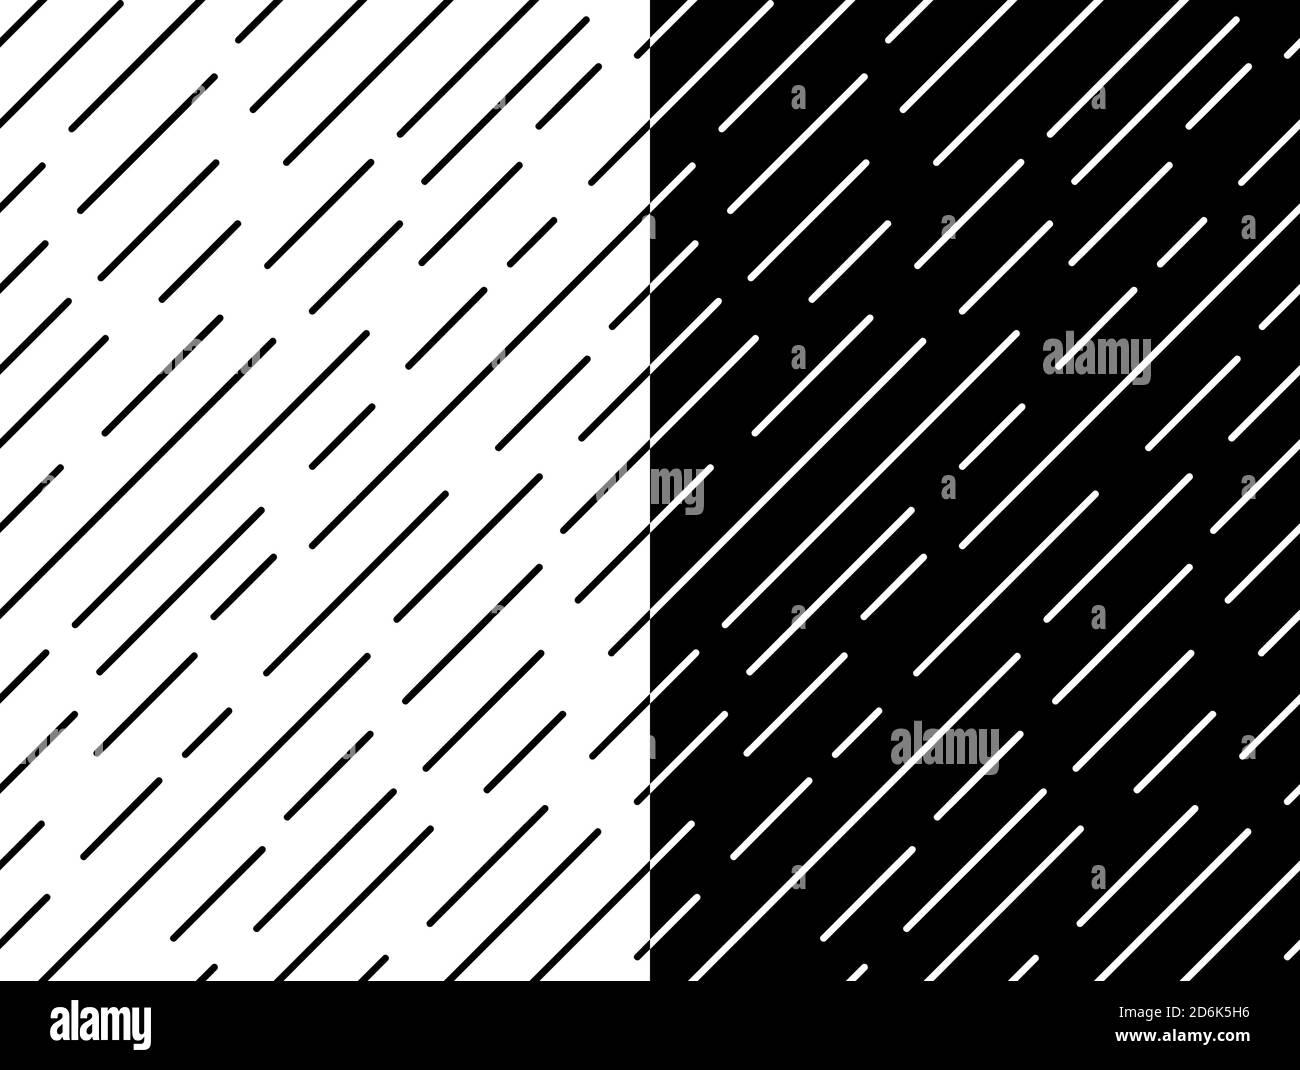 Nahtloses Liniengeometrie-Muster. Diagonal abstrakt einfache Vektor-Illustration Stock Vektor